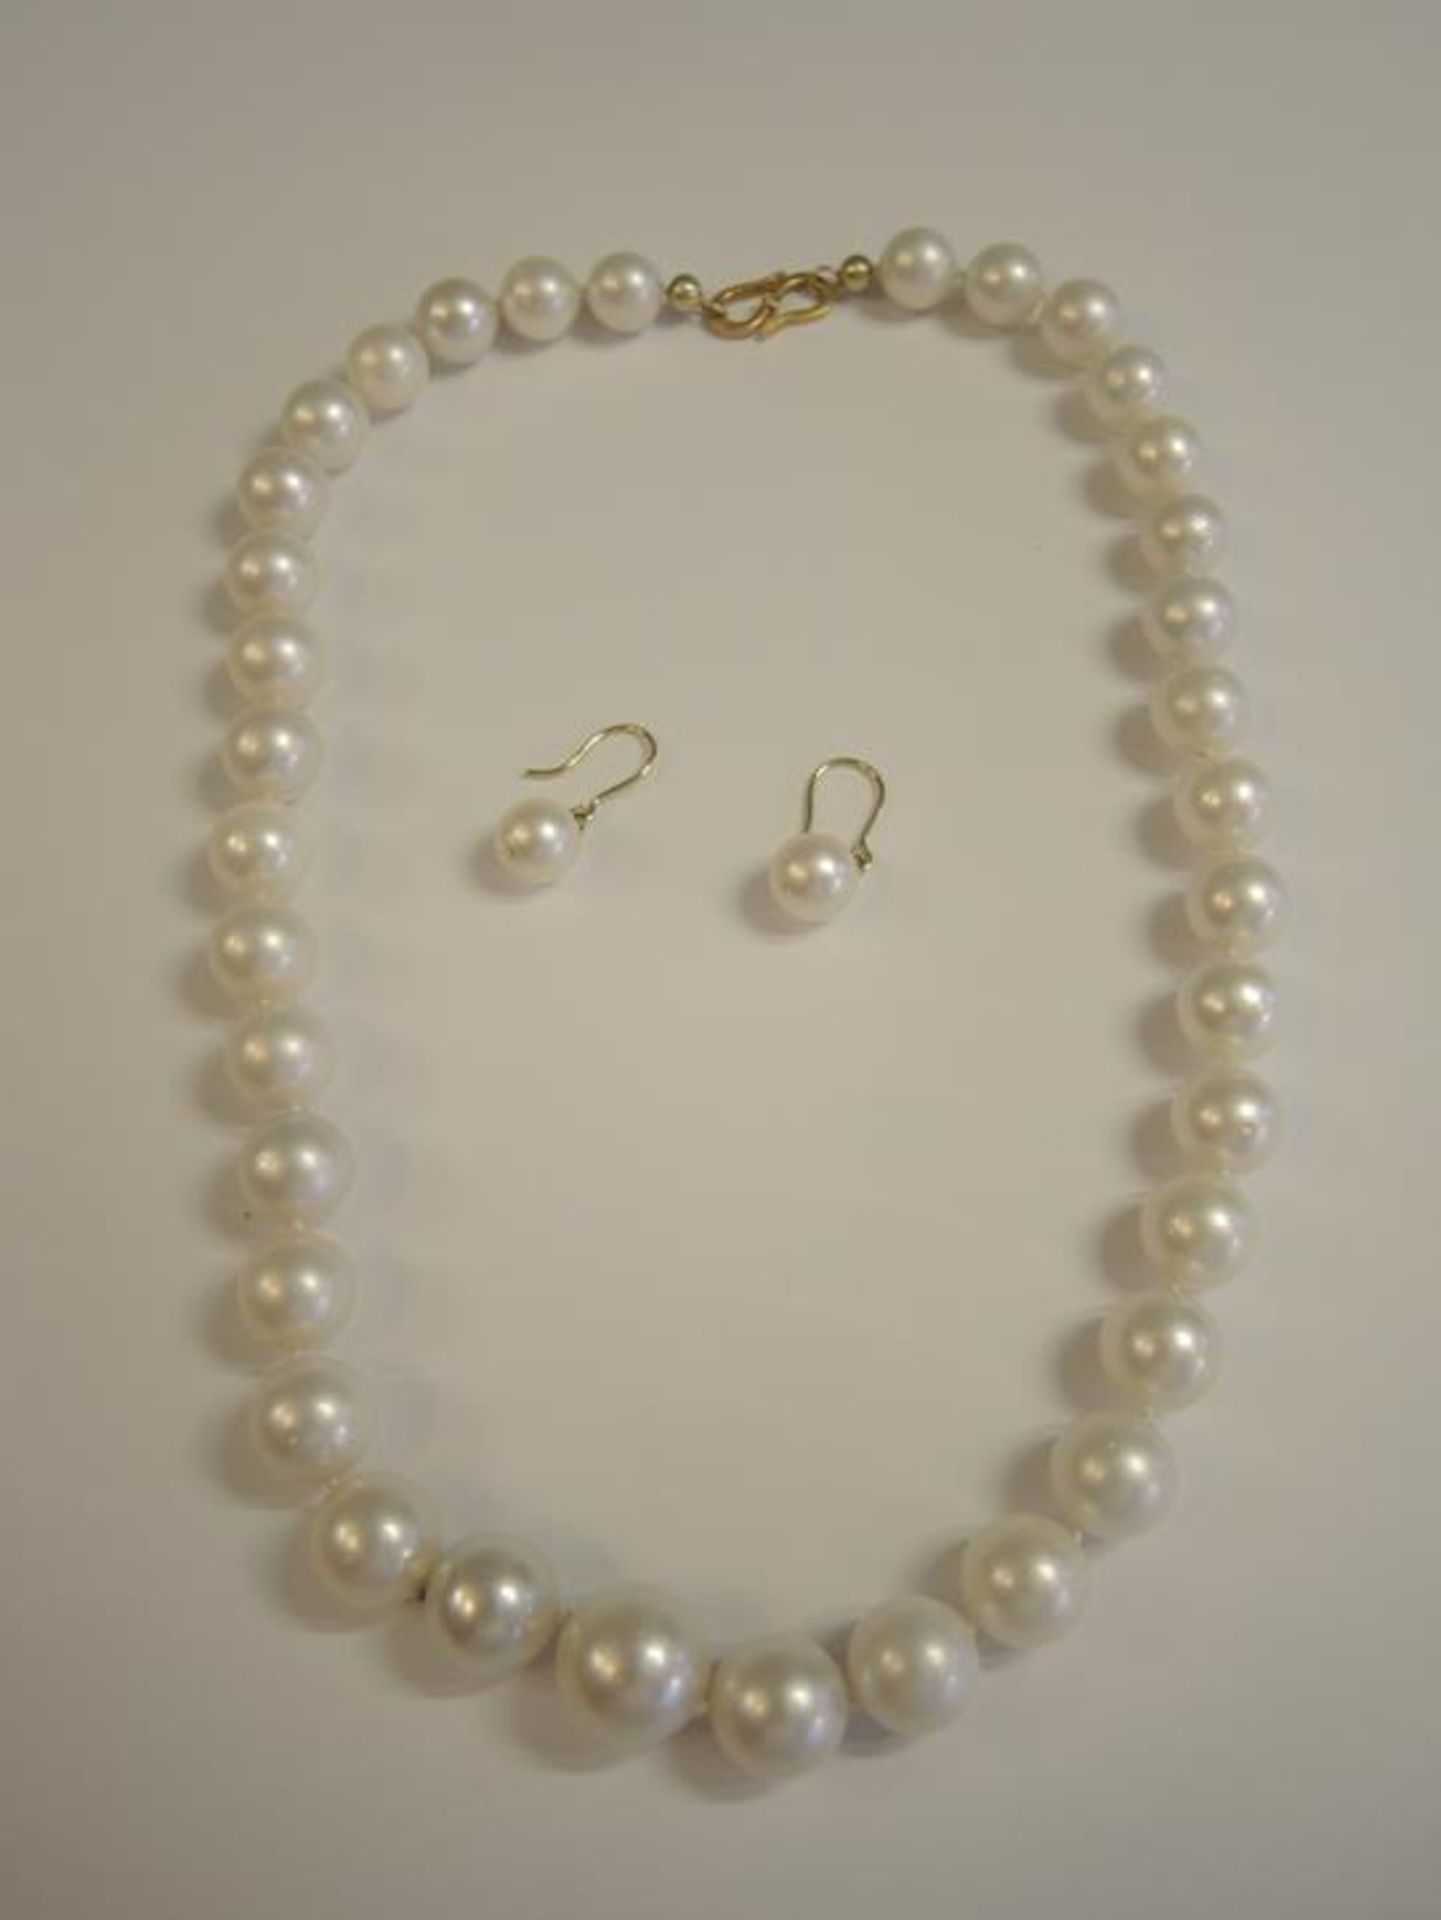 Große Perlenkette Mit Hackenverschluss und kleinen Diamanten besetzt, dazu die passenden Ohrringe.